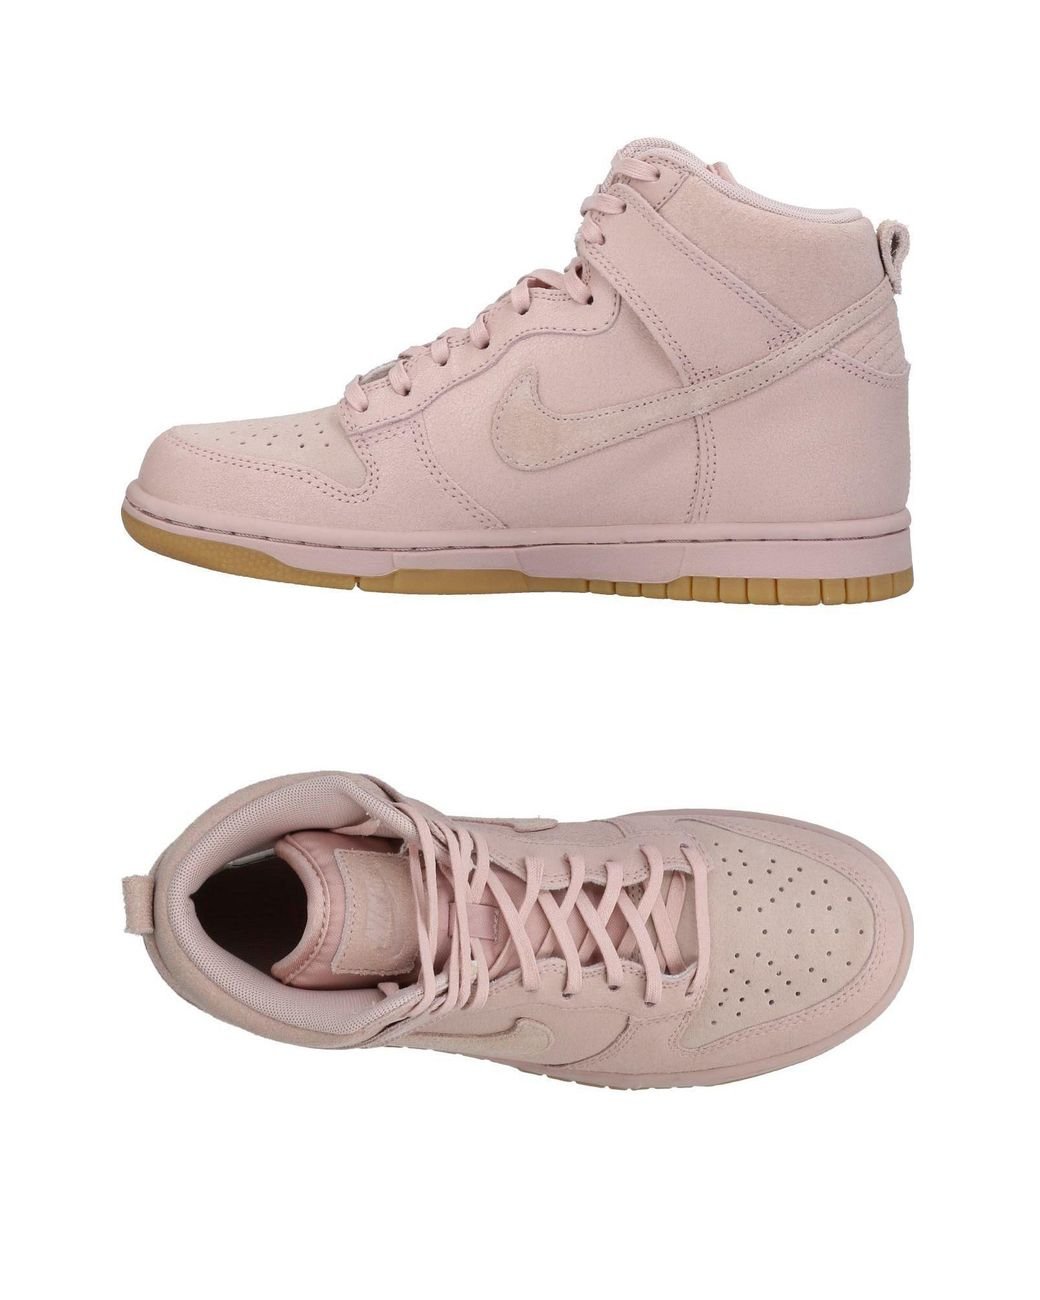 Nike High-tops & Sneakers in Pink | Lyst Australia